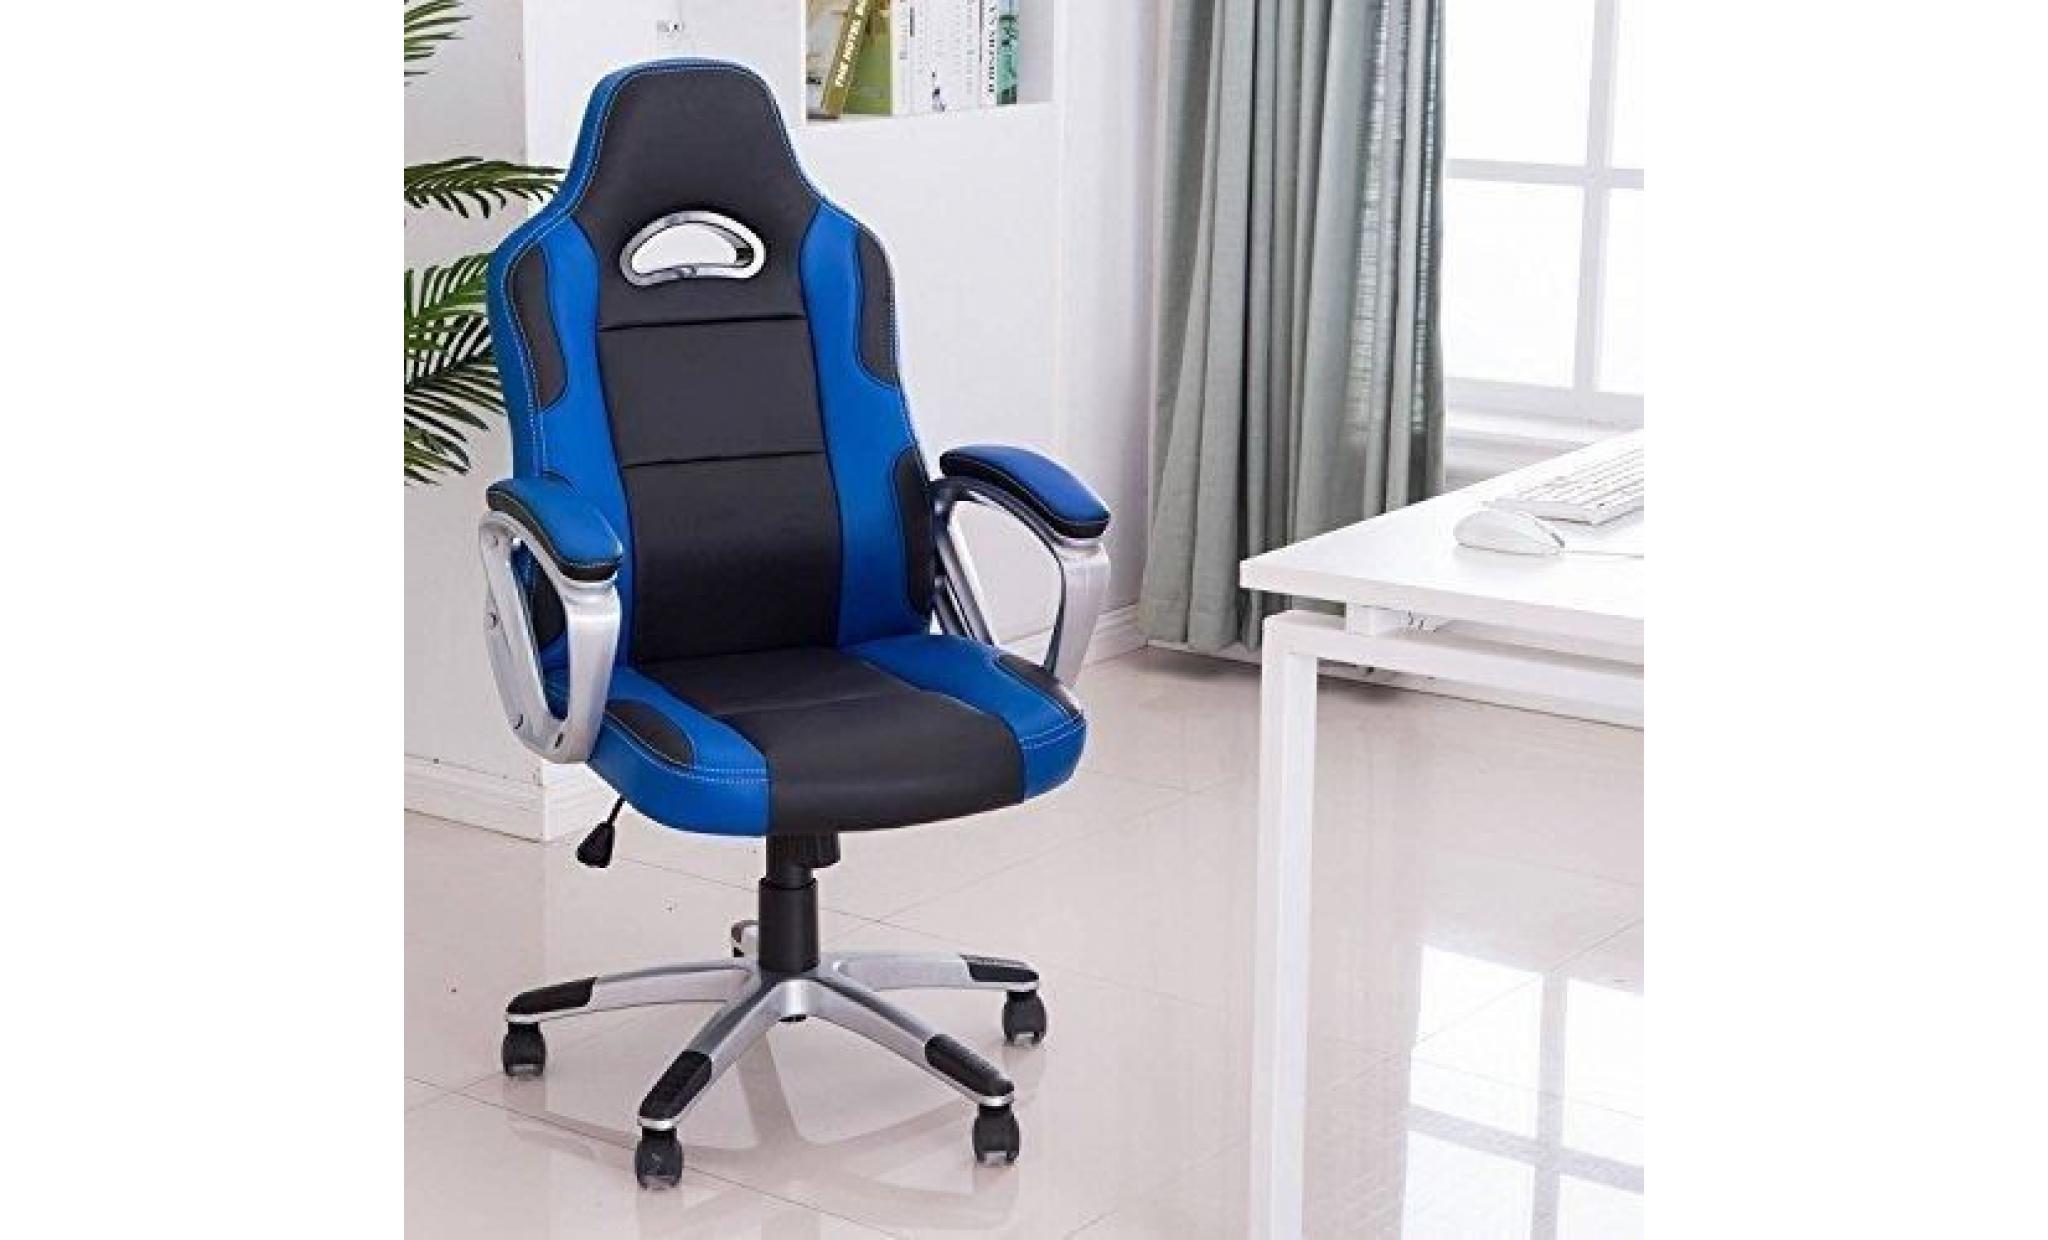 racing chaise de bureau pu   gaming chaise   fauteuil de bureau   hauteur réglable   bleu   intimate wm heat pas cher